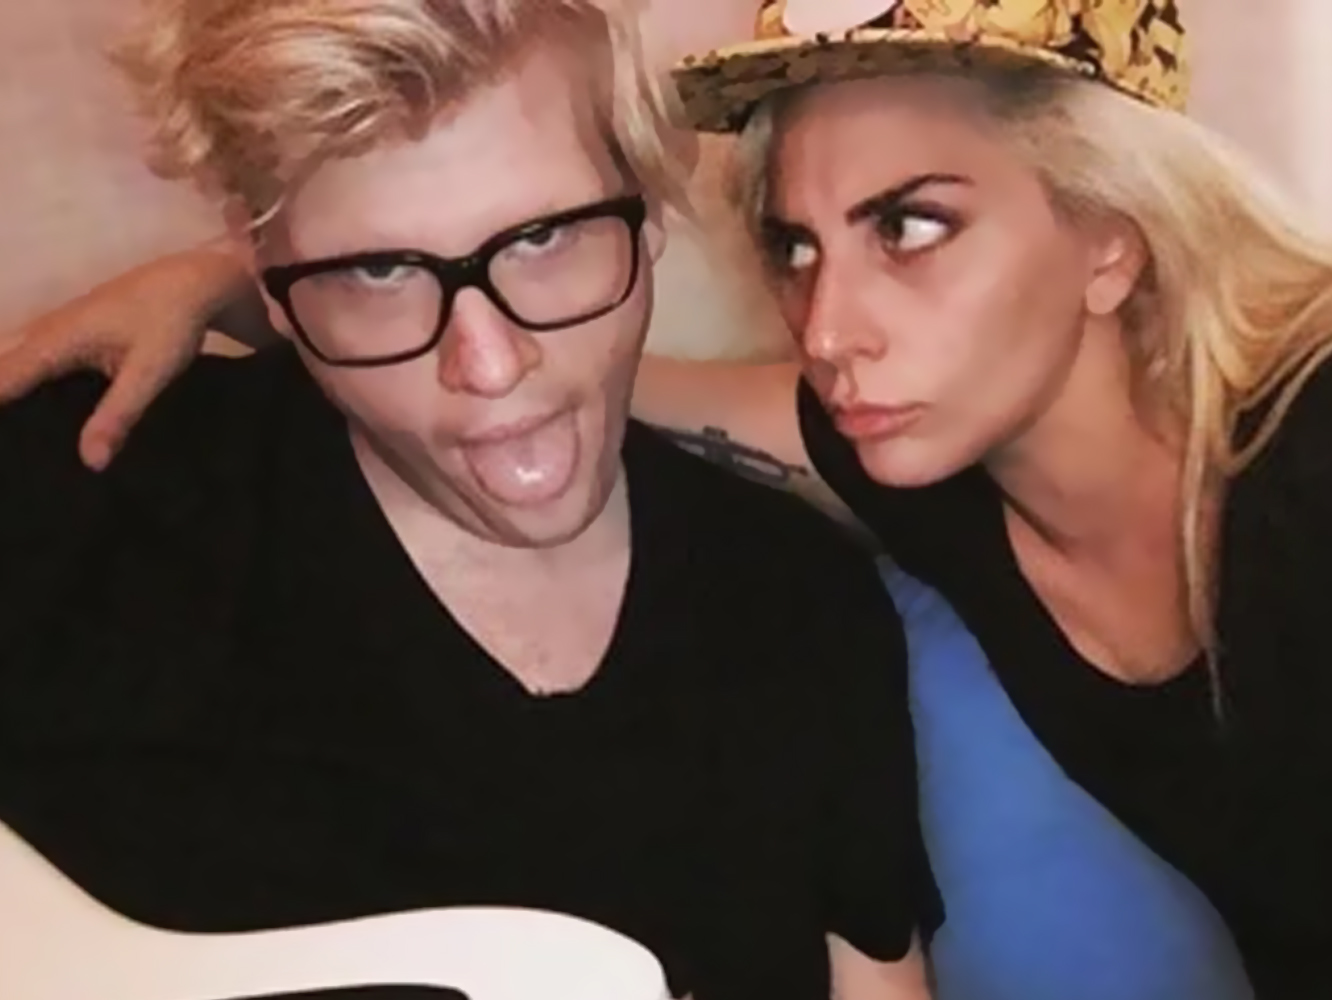  Bloodpop, productor del ‘Chromatica’ Lady Gaga, contribuye al shade a ‘Joanne’ y ‘Cheek To Cheek’